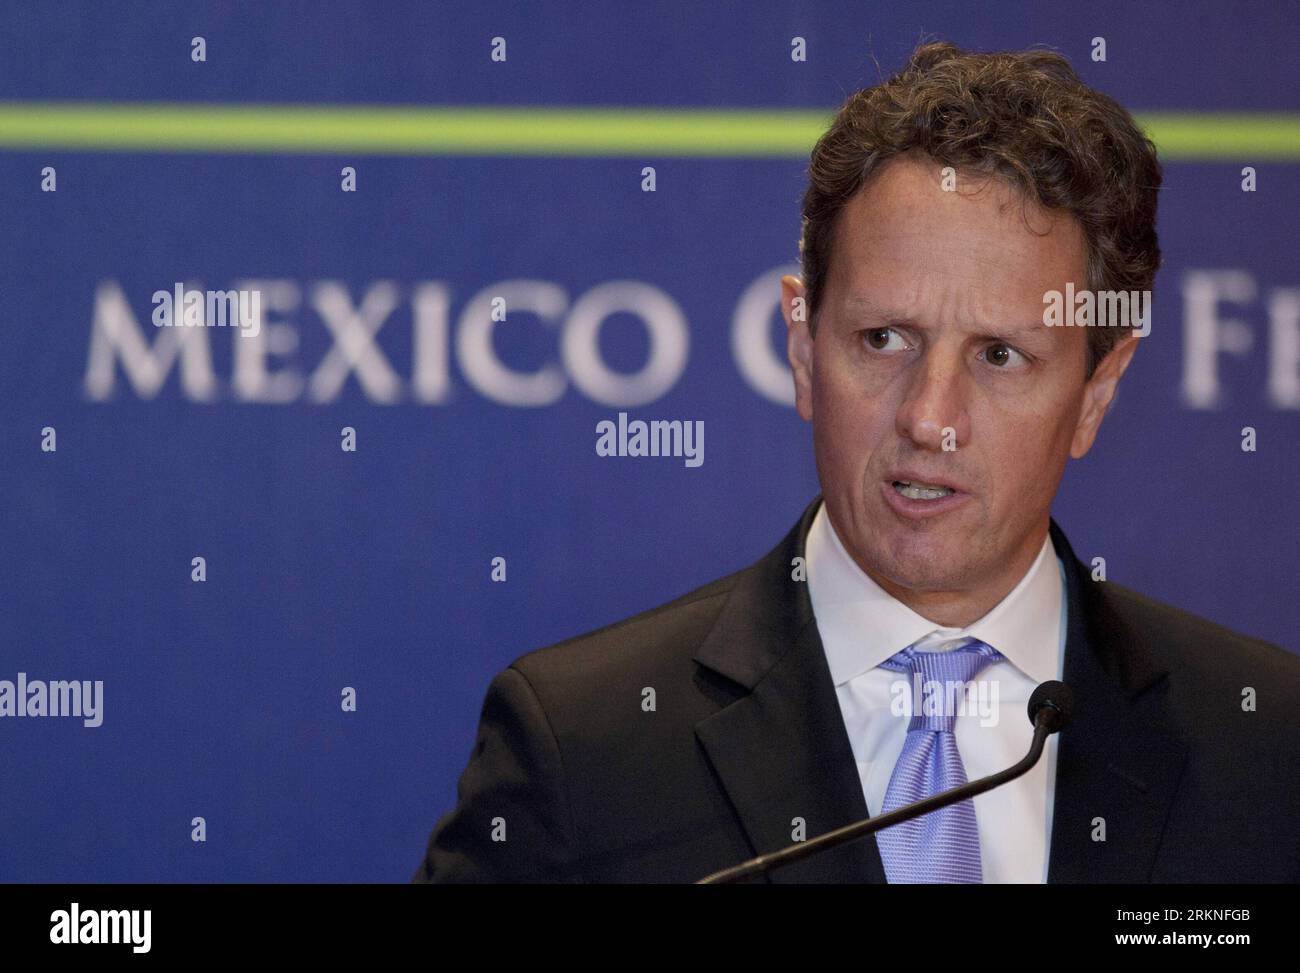 Bildnummer : 57111417 Datum : 25.02.2012 Copyright : imago/Xinhua (120227) -- MEXICO, 27 février 2012 (Xinhua) -- le secrétaire américain au Trésor, Timothy Geithner, assiste à une conférence de presse lors de la première réunion des ministres des Finances et des présidents des banques centrales du G20 à Mexico, capitale du Mexique, le 25 février 2012. La première réunion des ministres des Finances et des présidents des banques centrales du G20 s’est achevée dimanche. (Xinhua/Shi Sisi) (zyw) MEXICO-MEXICO CITY-G20 PUBLICATIONxNOTxINxCHN People Politik Wirtschaft G20 G 20 Porträt premiumd xsp x0x 2012 quer 57111417 Date 25 02 2012 Copyri Banque D'Images